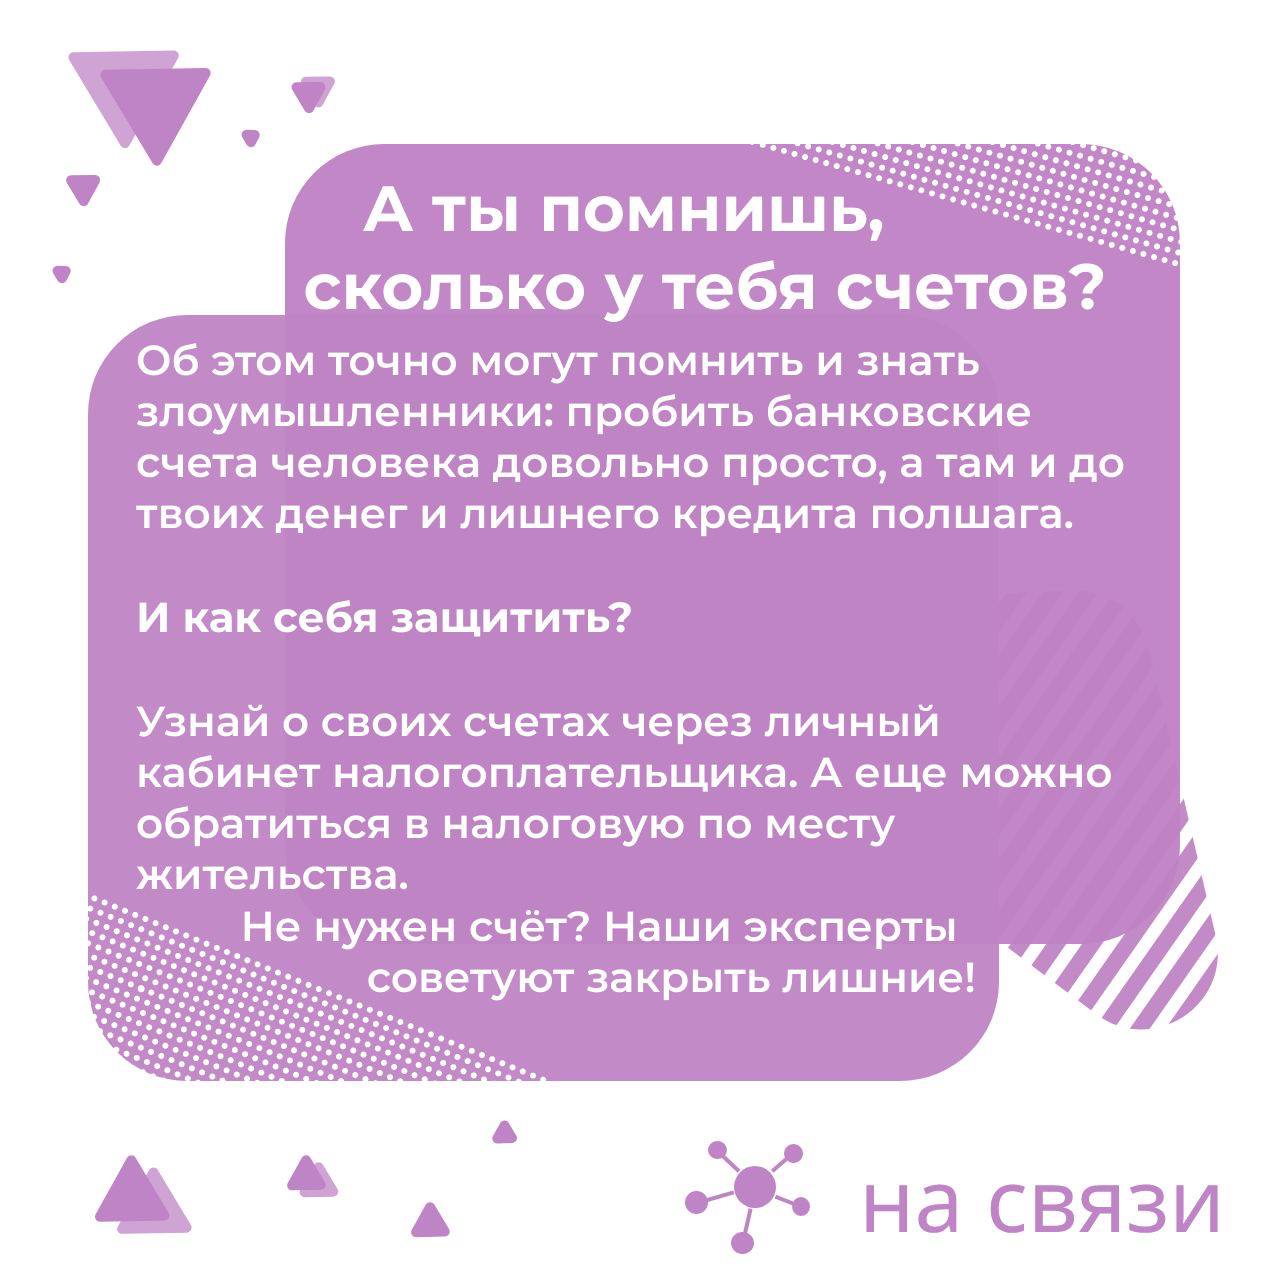 Телефон службы поддержки телеграмм в россии бесплатный фото 26